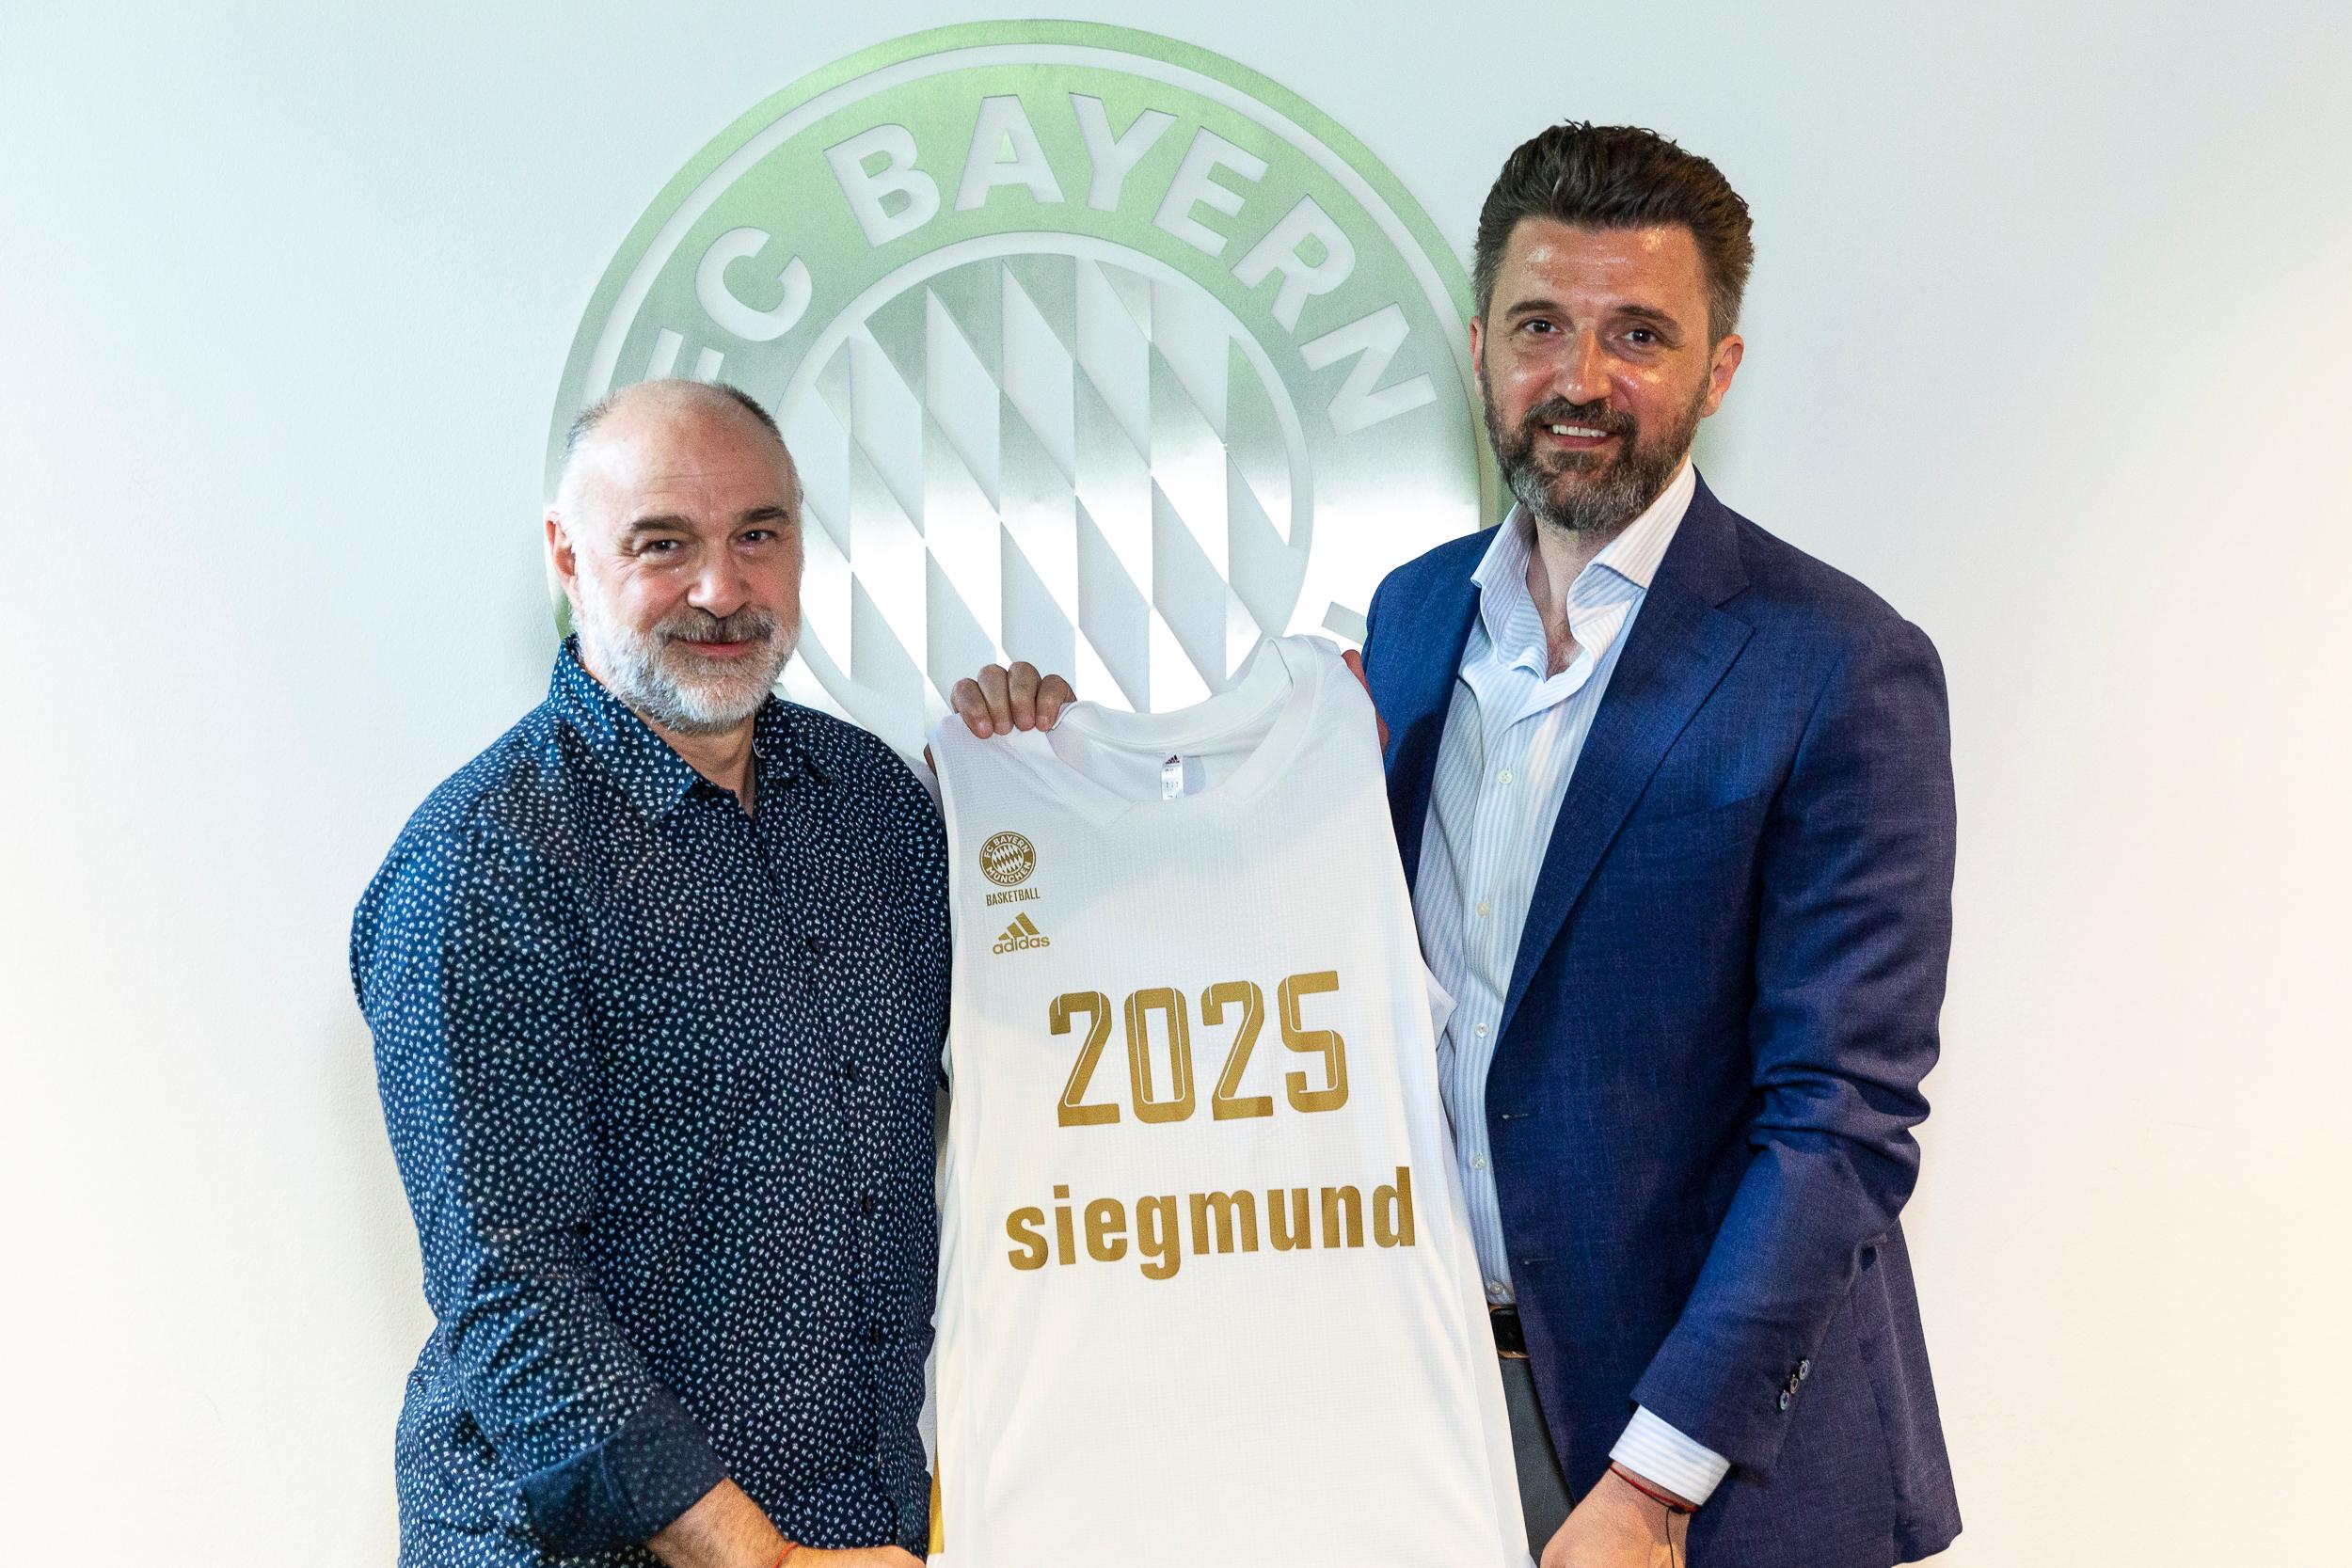 Der FC Bayern München hat einen neuen Chefcoach: Pablo Laso, 55, wird den Münchner Pokalsieger in den kommenden beiden Spielzeiten trainieren, der frühere spanische Nationalspieler und langjährige Erfolgscoach von Real Madrid unterschrieb jetzt einen Vertrag bis Sommer 2025.